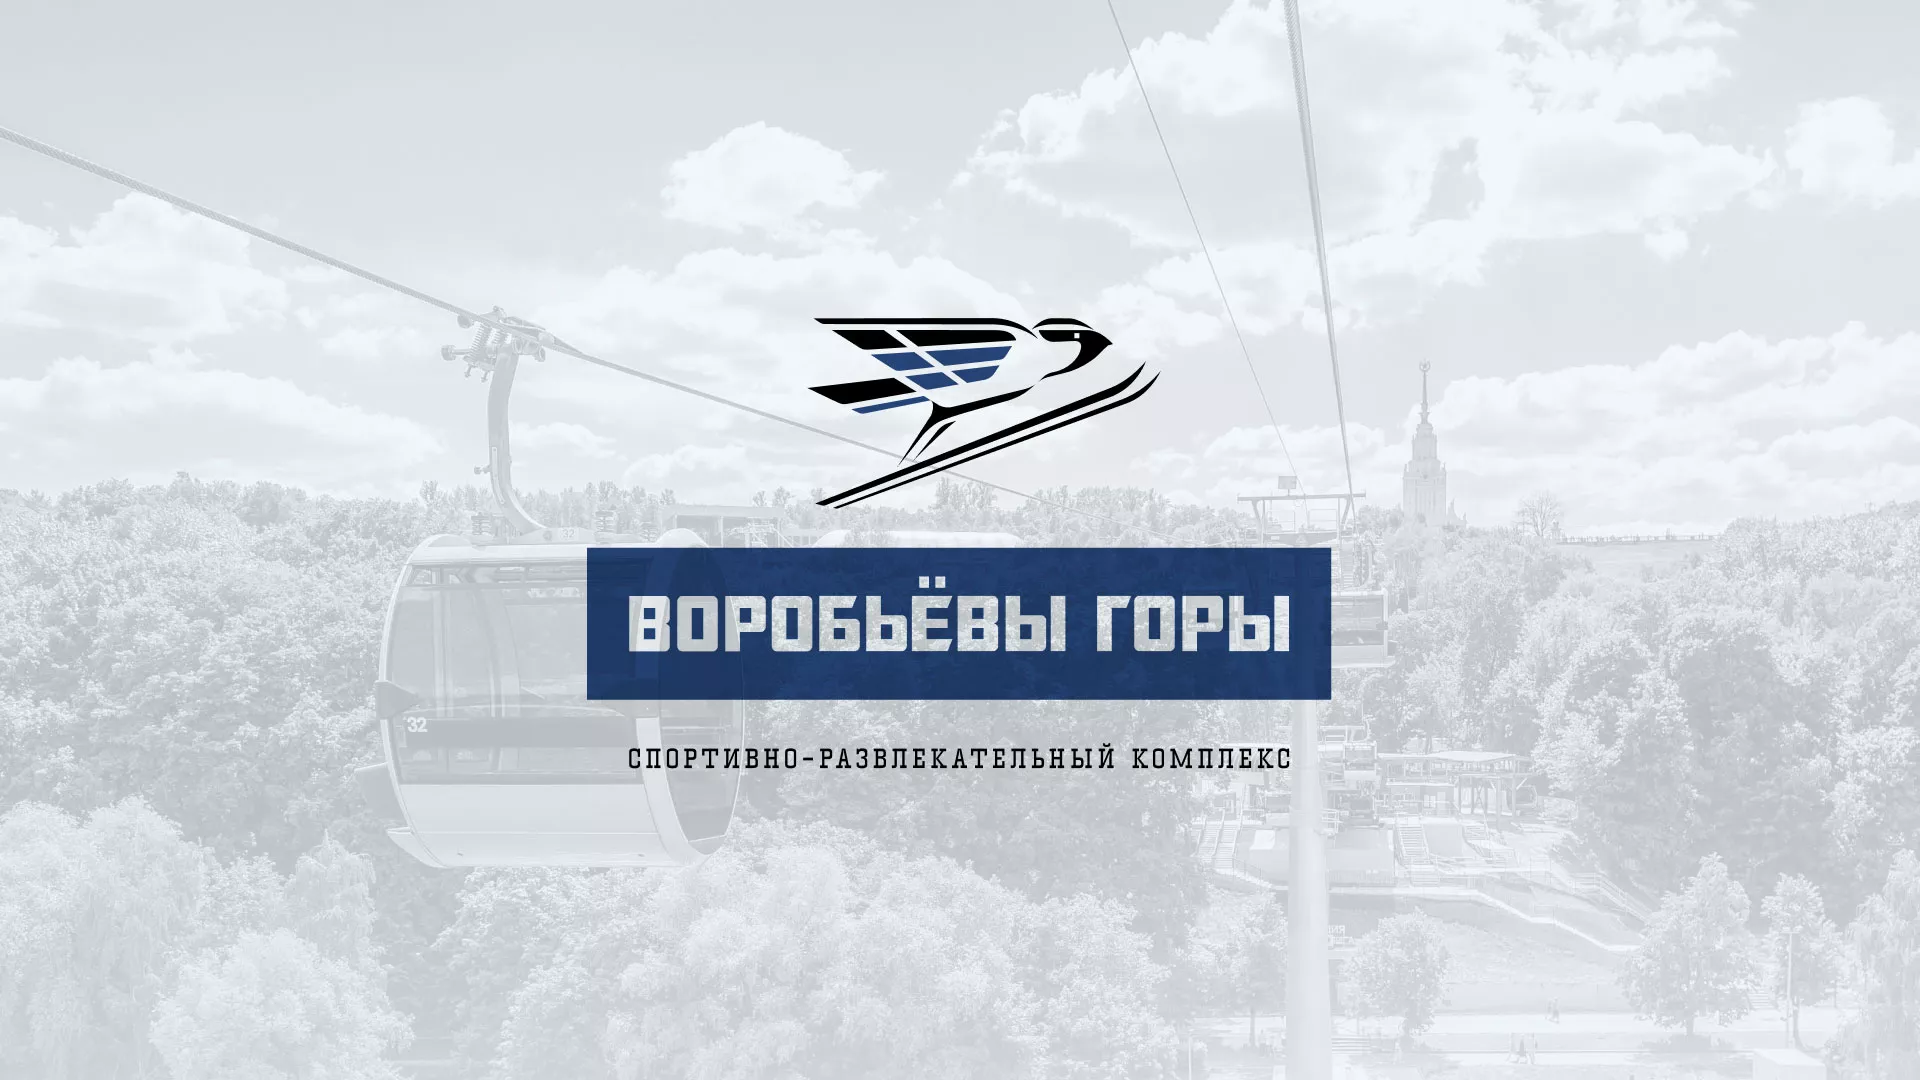 Разработка сайта в Козьмодемьянске для спортивно-развлекательного комплекса «Воробьёвы горы»